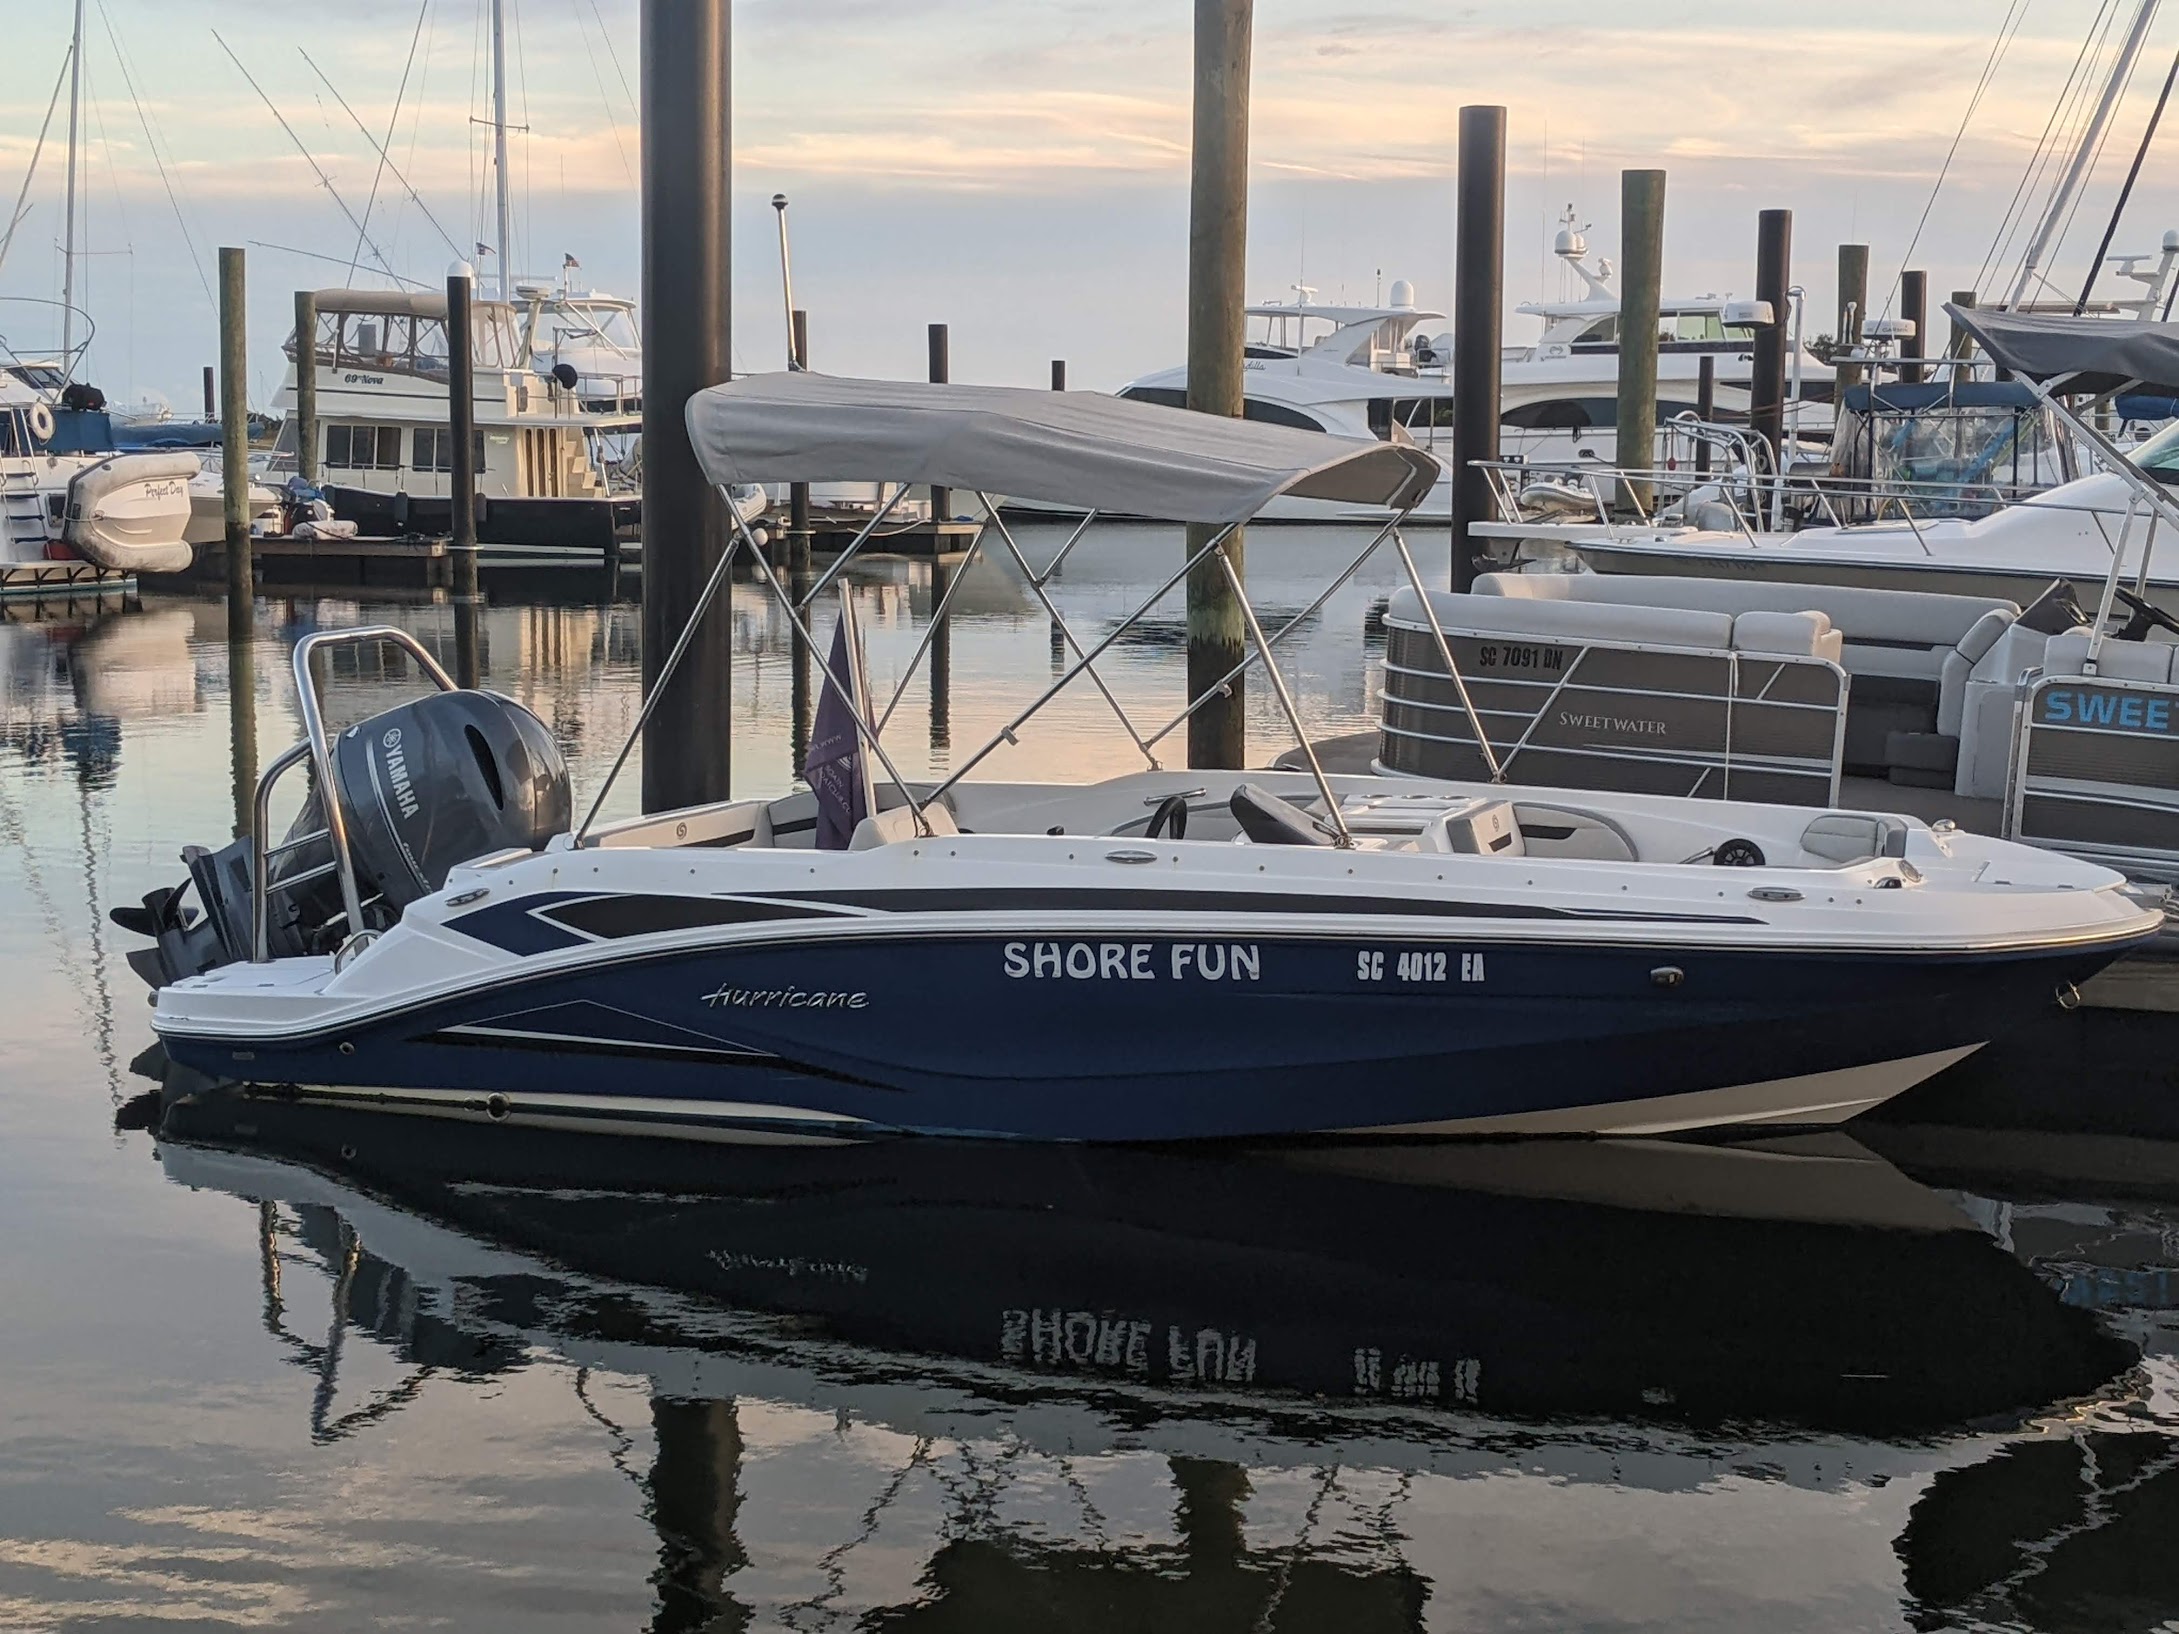 SHORE FUN - Deck Boat (no fishing)